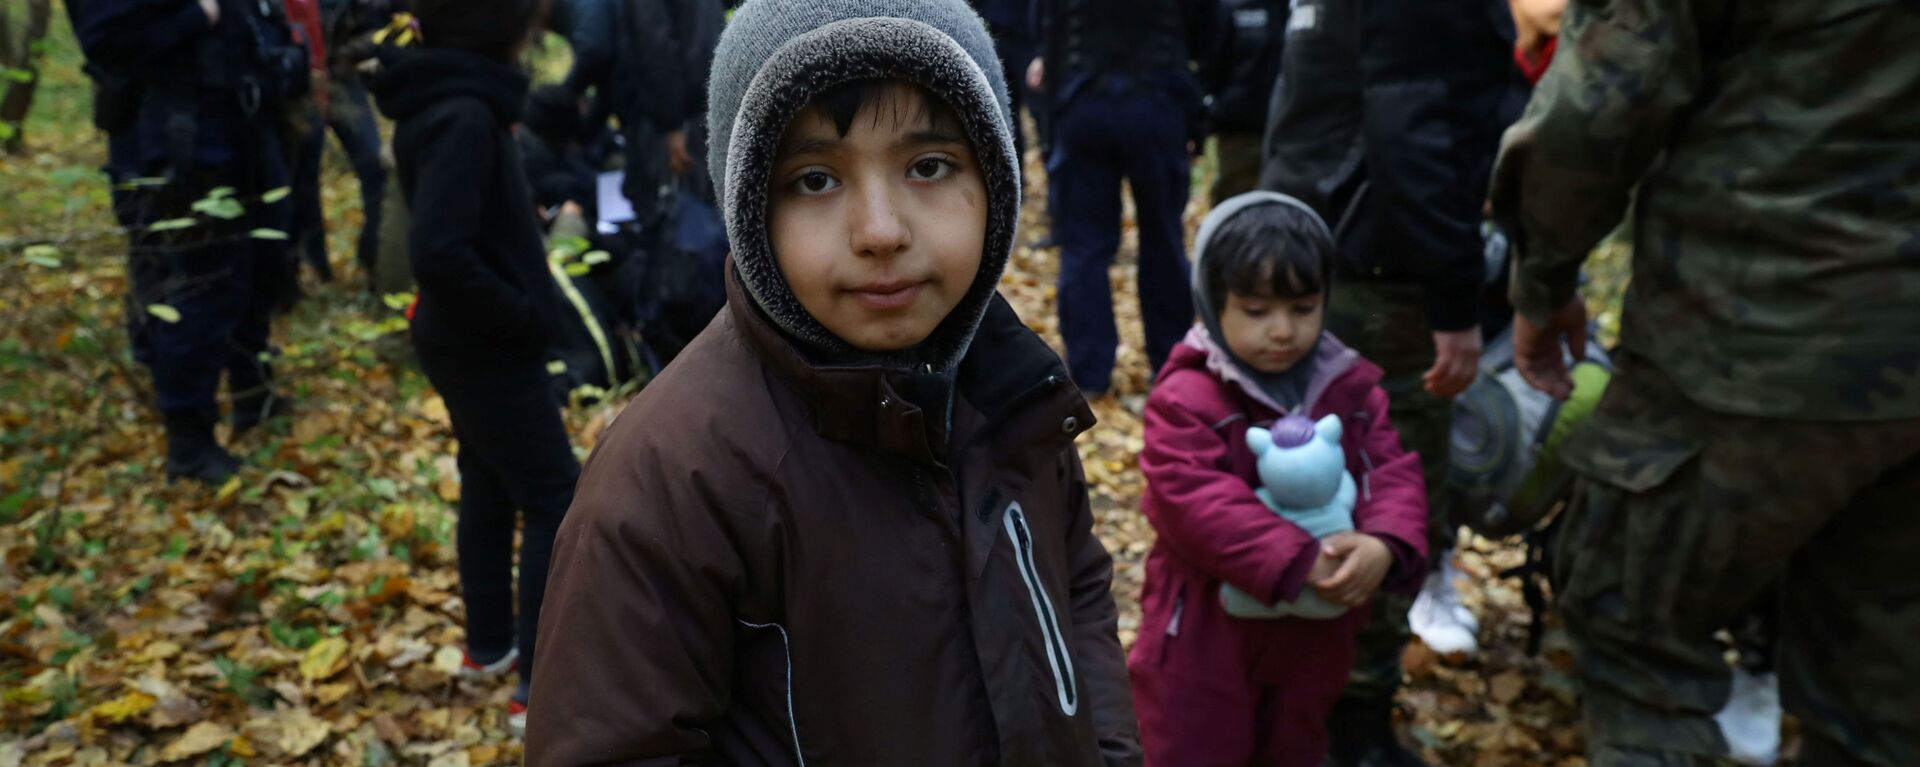 Иракский ребенок в окружении пограничников и полицейских после пересечения белорусско-польской границы в городе Хайнувка, Польша - Sputnik Latvija, 1920, 17.10.2021